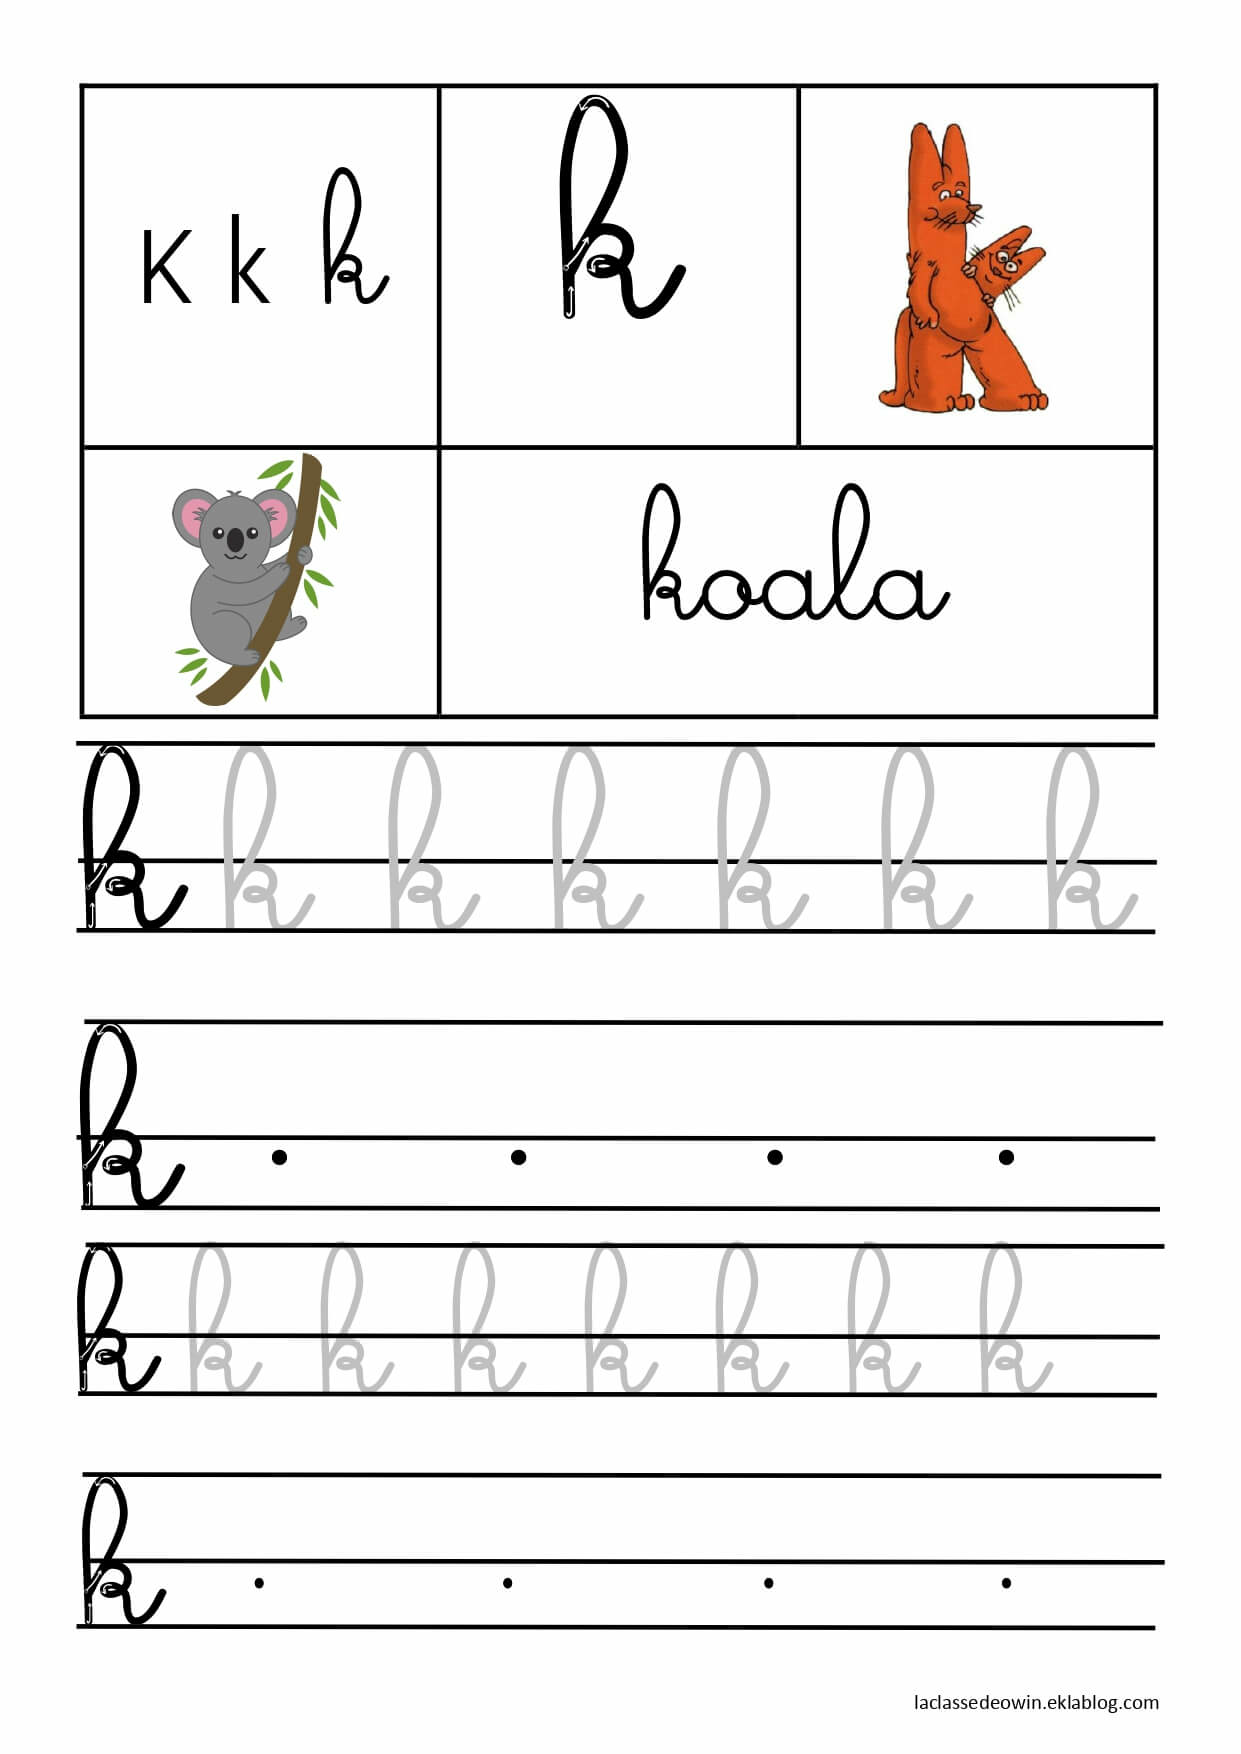   Lettre K pour koala, écriture cursive GS 